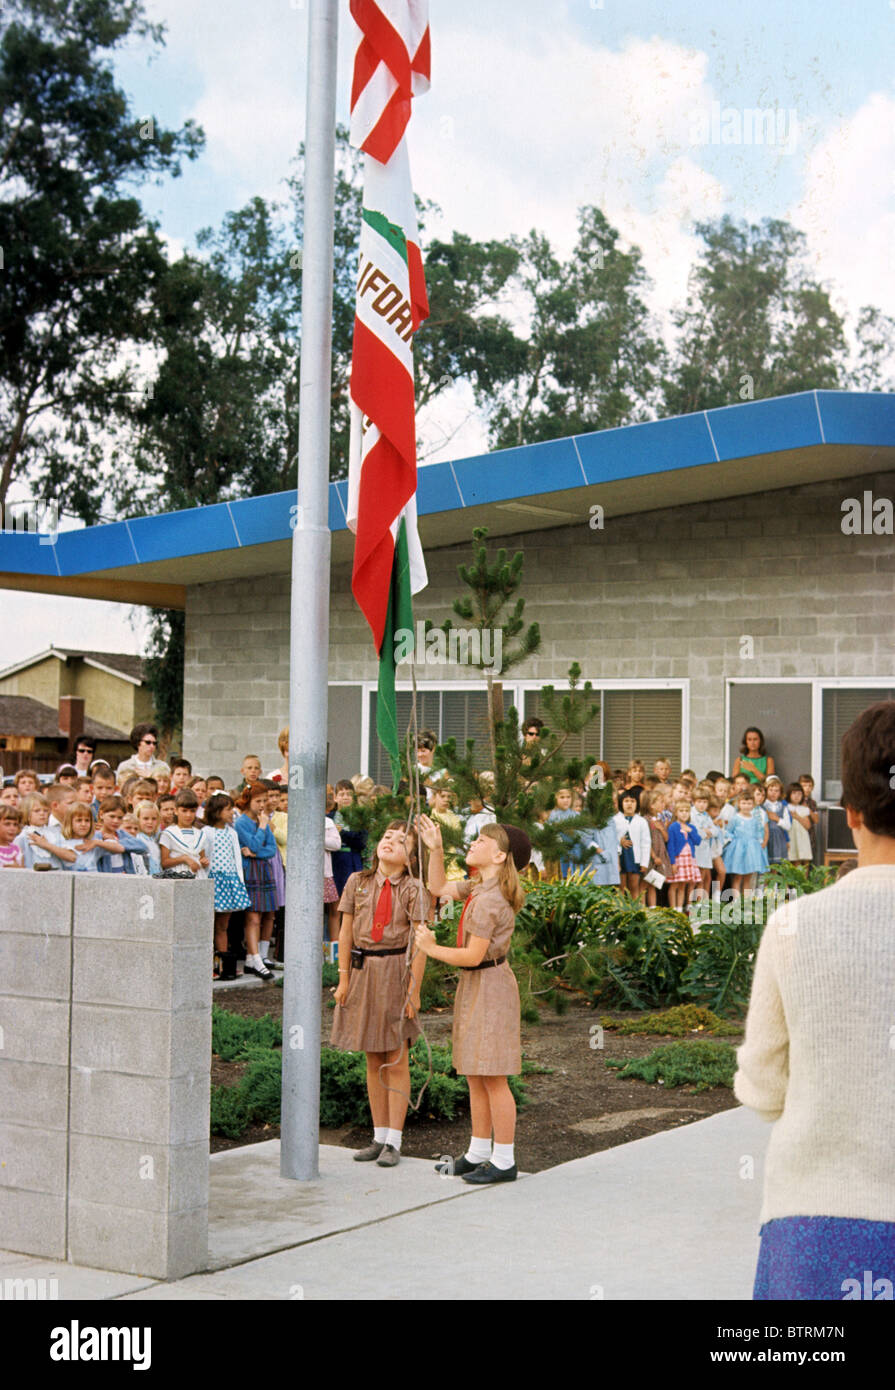 Brownie girl scout sensibiliser l'école étudiants pôle drapeau pays Amérique USA Patriot nation salut allégeance honneur respect Banque D'Images